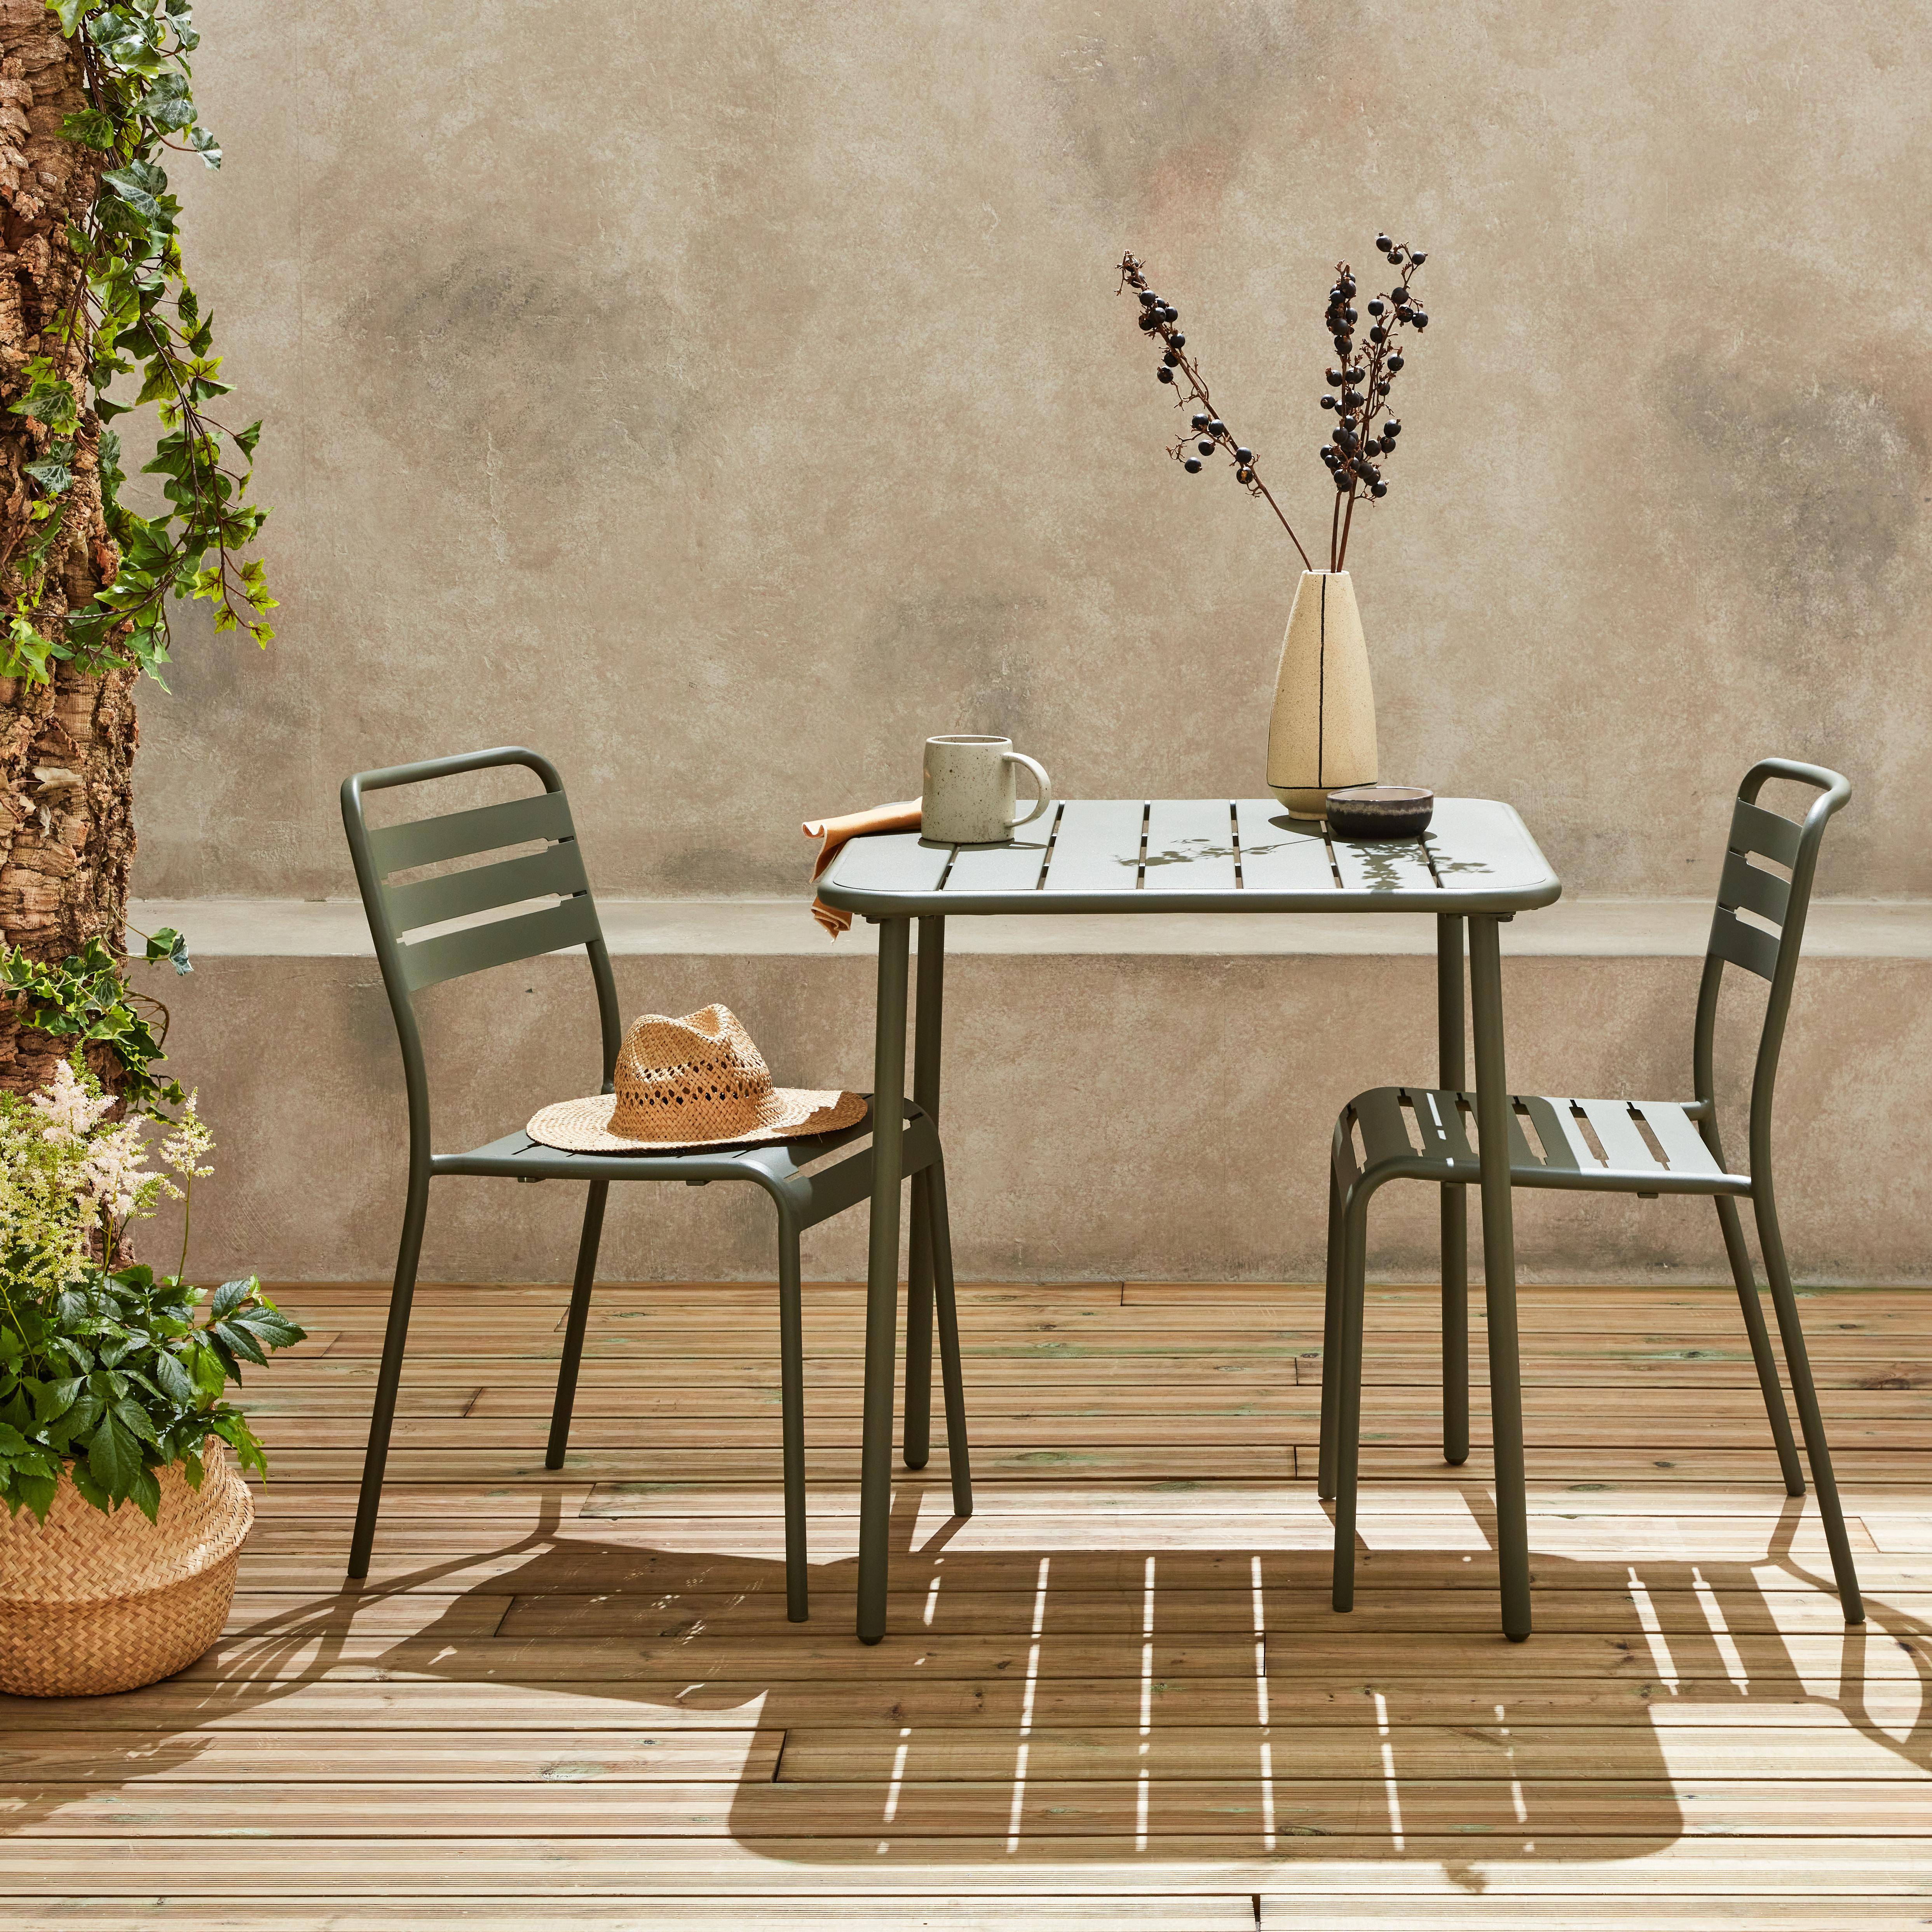 Metall-Gartentisch mit 2 Stühlen, 2 Personen, Amelia Savanne 70 x 70 cm,sweeek,Photo1